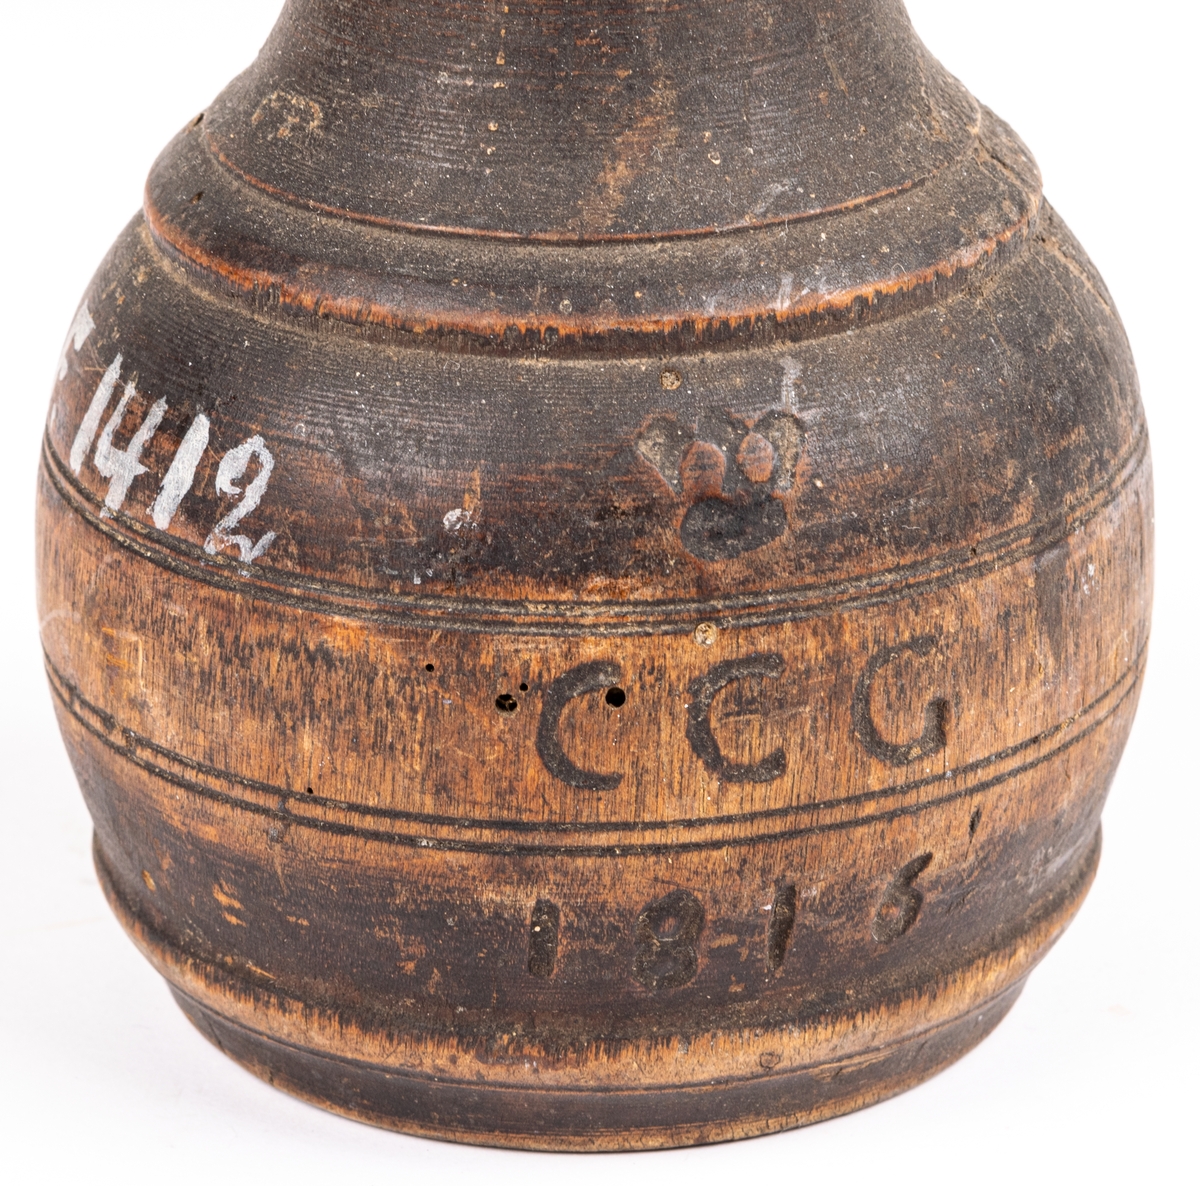 Besman av trä, handtag saknas. Märkt GCG (?) 1816.